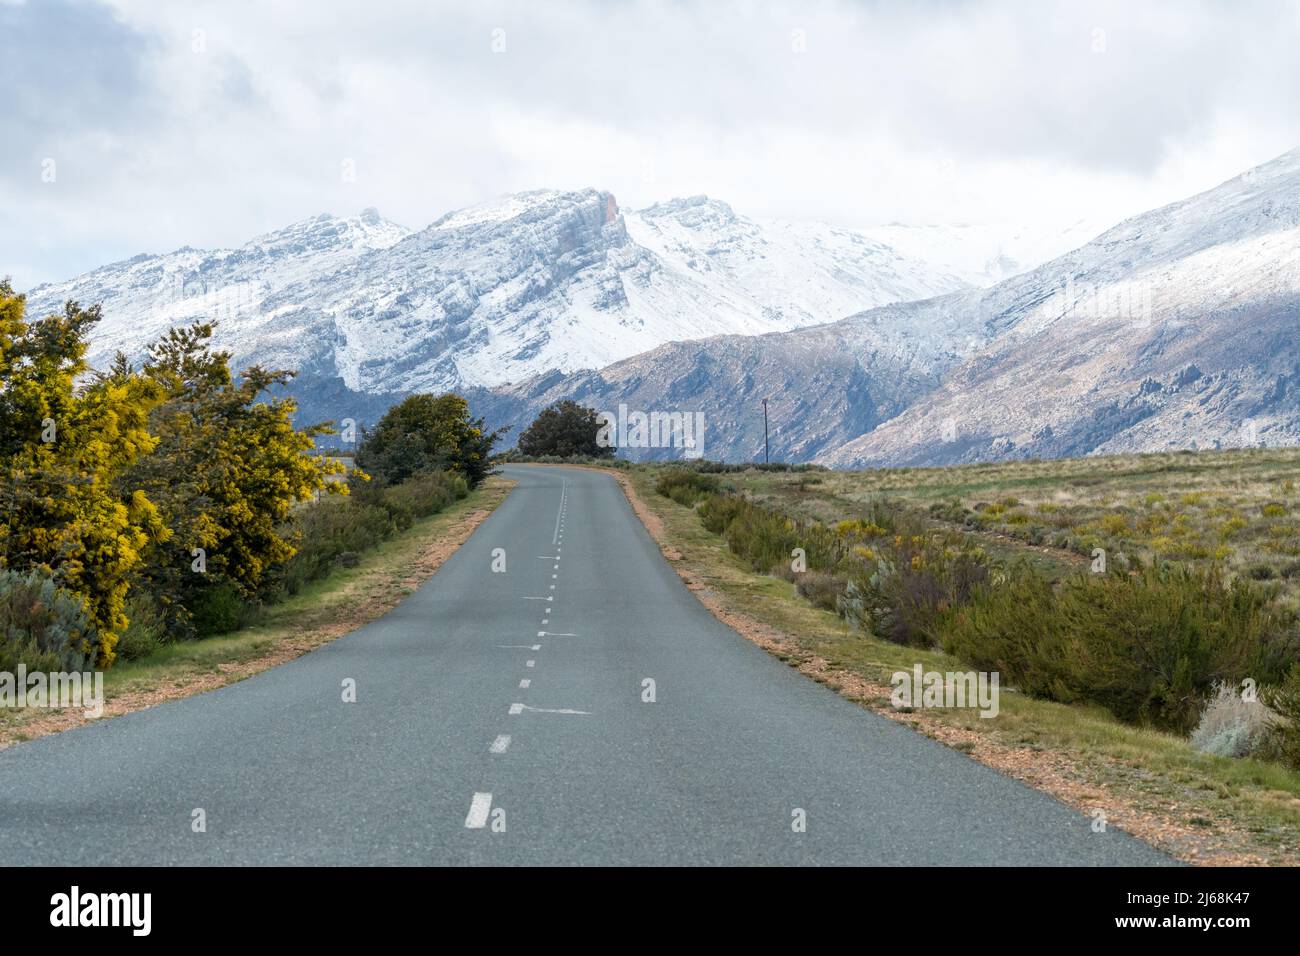 Asfalto o asfaltata strada senza fine che porta verso il paesaggio di montagne innevate a Ceres, Capo Occidentale, Sud Africa durante l'inverno Foto Stock